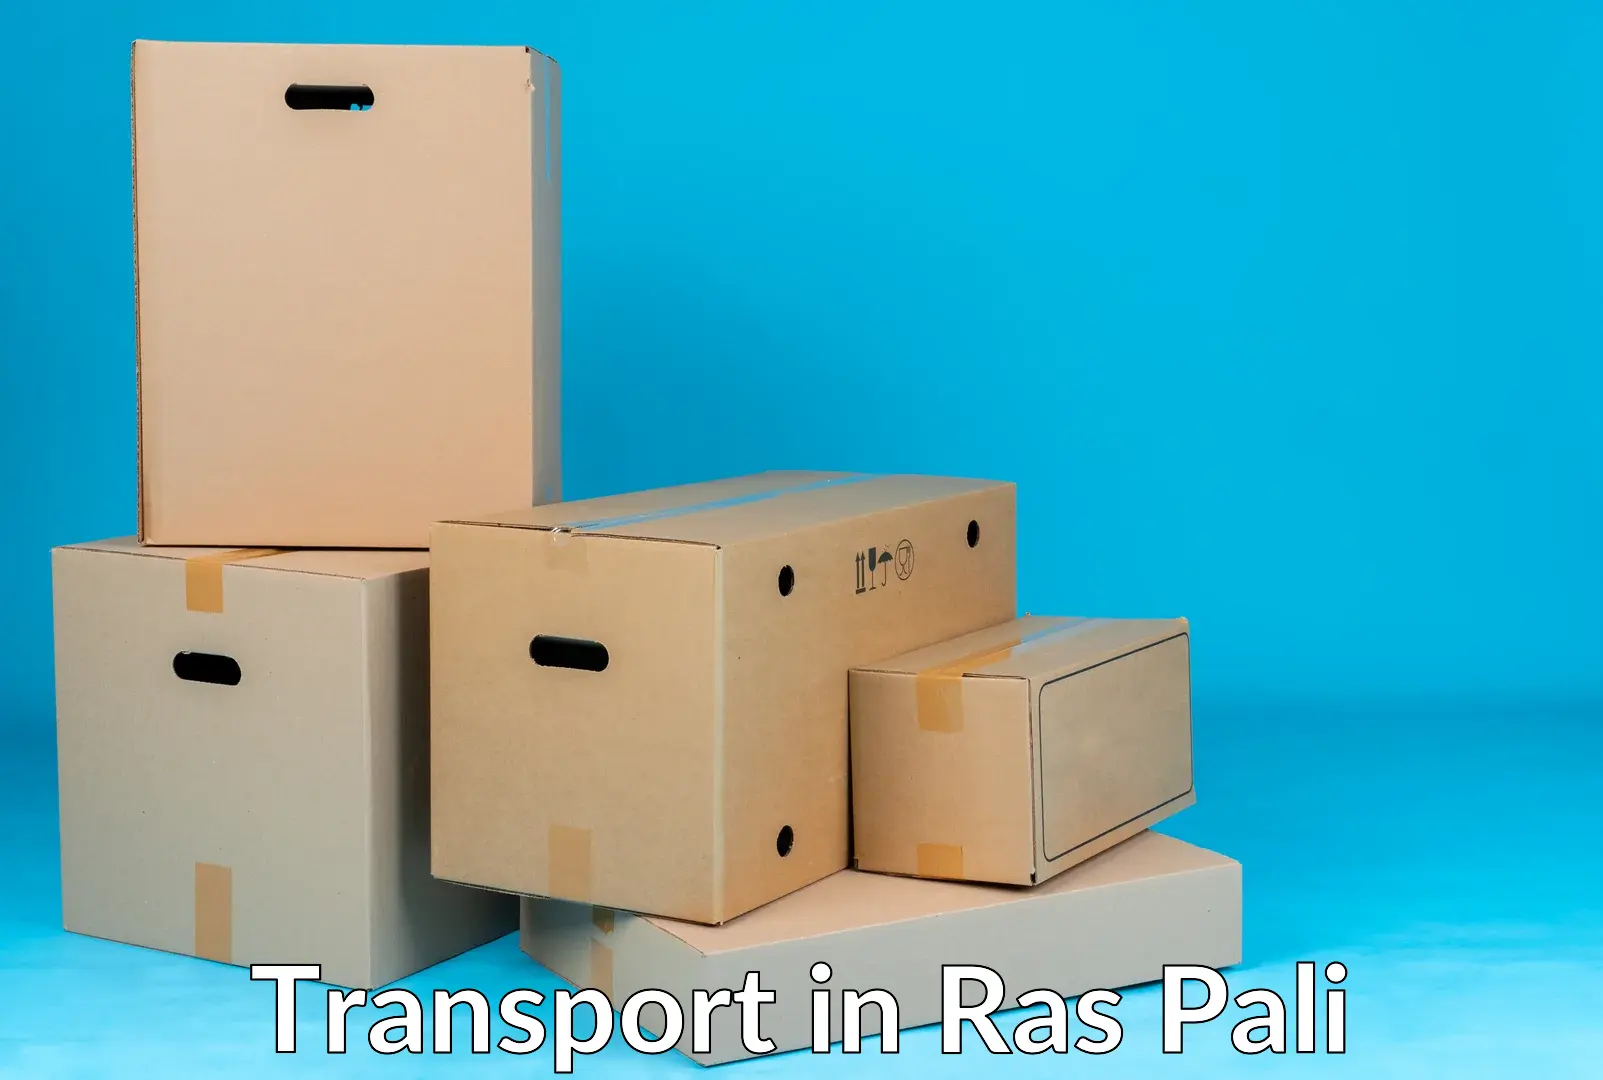 Nearest transport service in Ras Pali